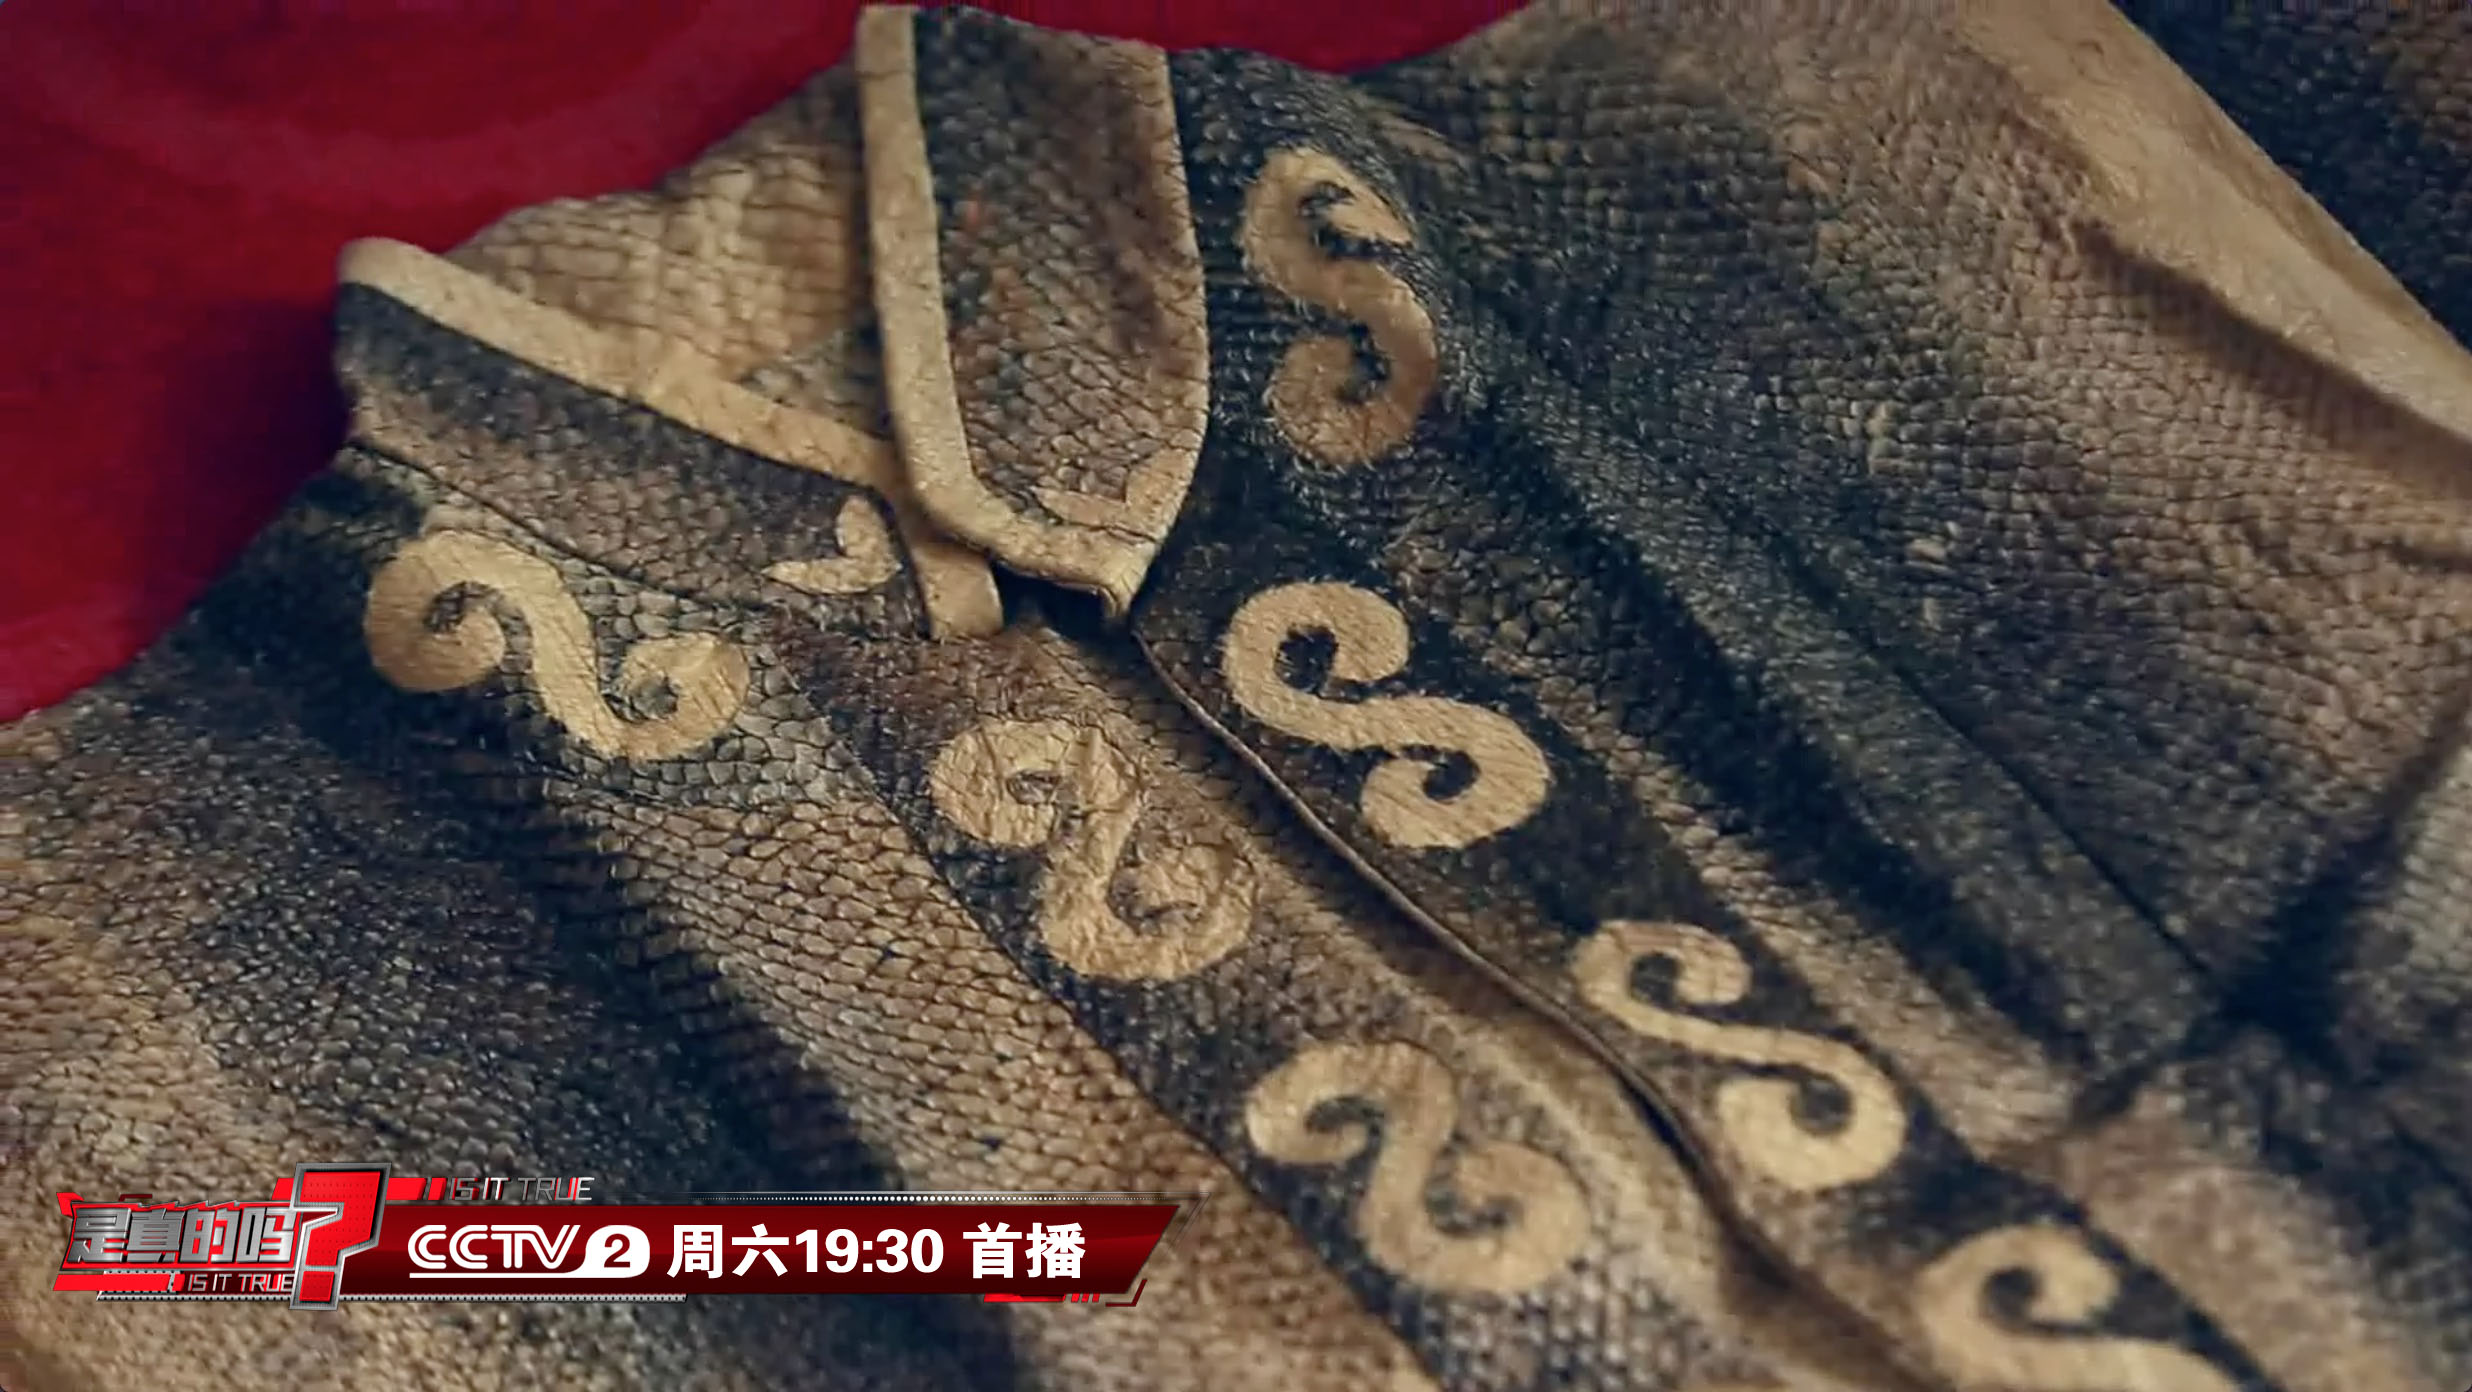 岱庙资讯-文博快讯-济南市博物馆将推出“中国赫哲族传统鱼皮衣与鱼皮配饰作品展”